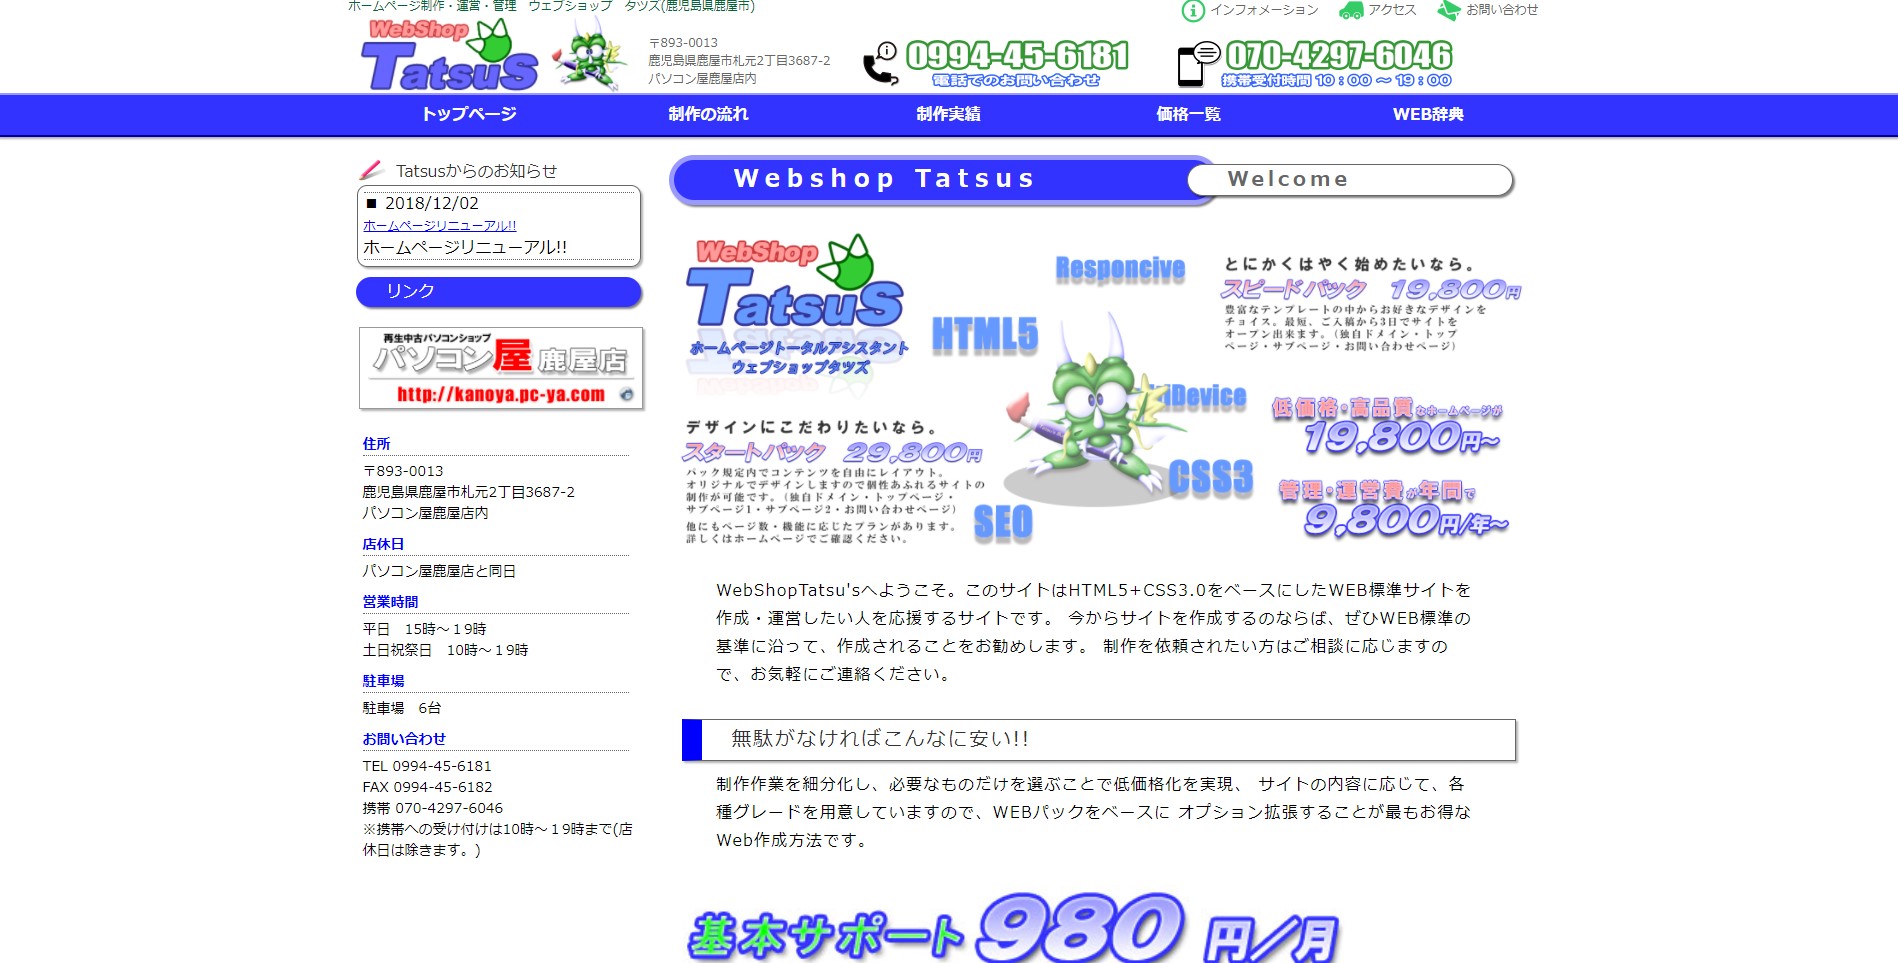 Web Shop Tatsu'